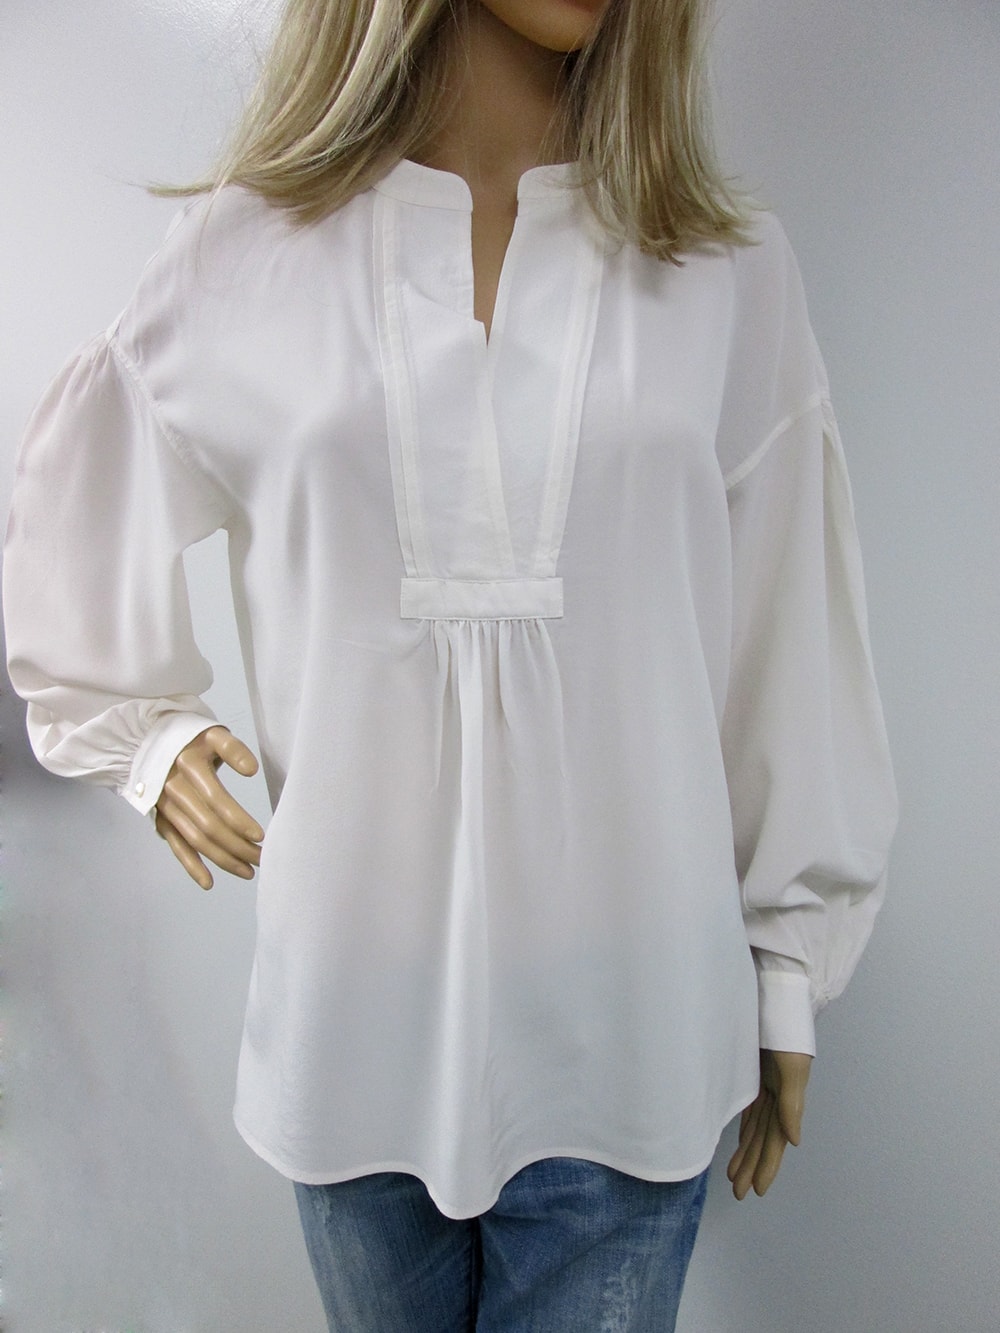 Vince Women Silk blouse 100% silk - gdacht